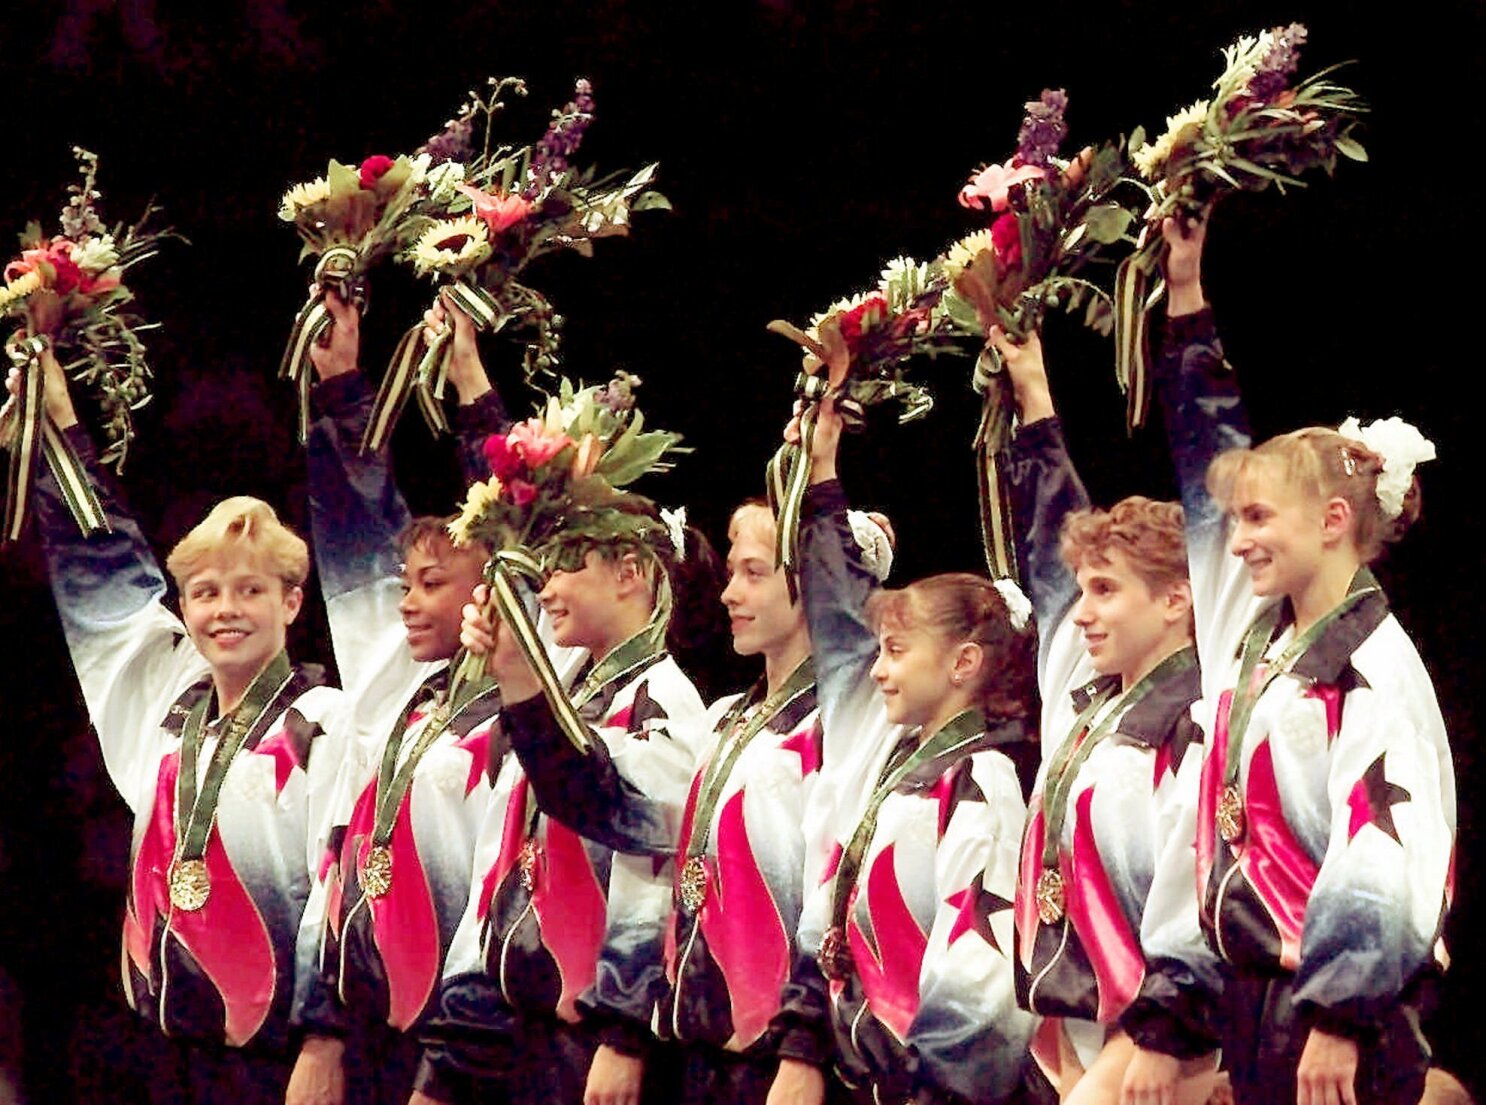 Women's Basketball Dream Team: 1996 gold helped launch WNBA